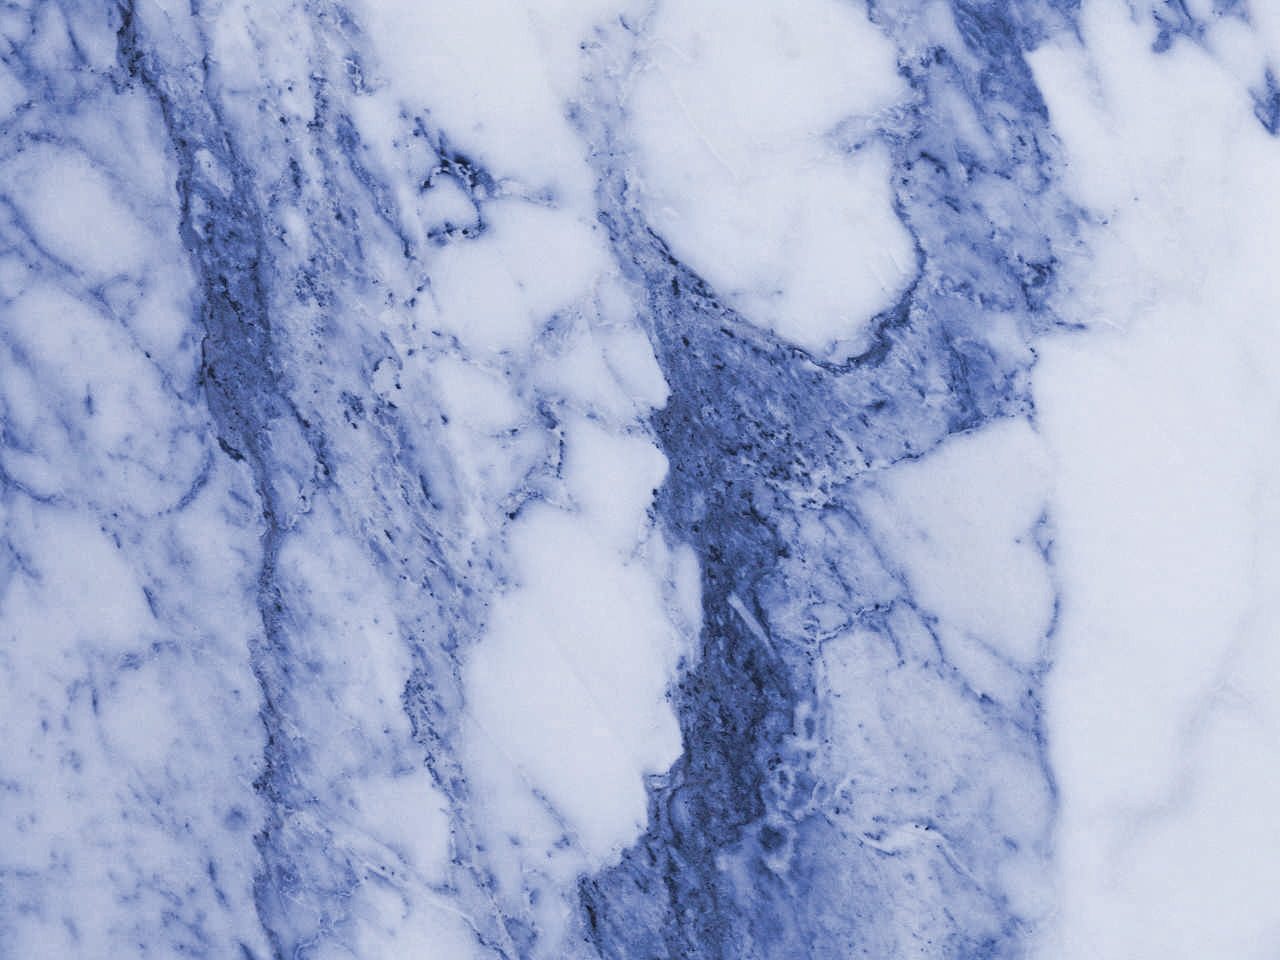 marmol tapete,blau,weiß,einfrieren,himmel,eis